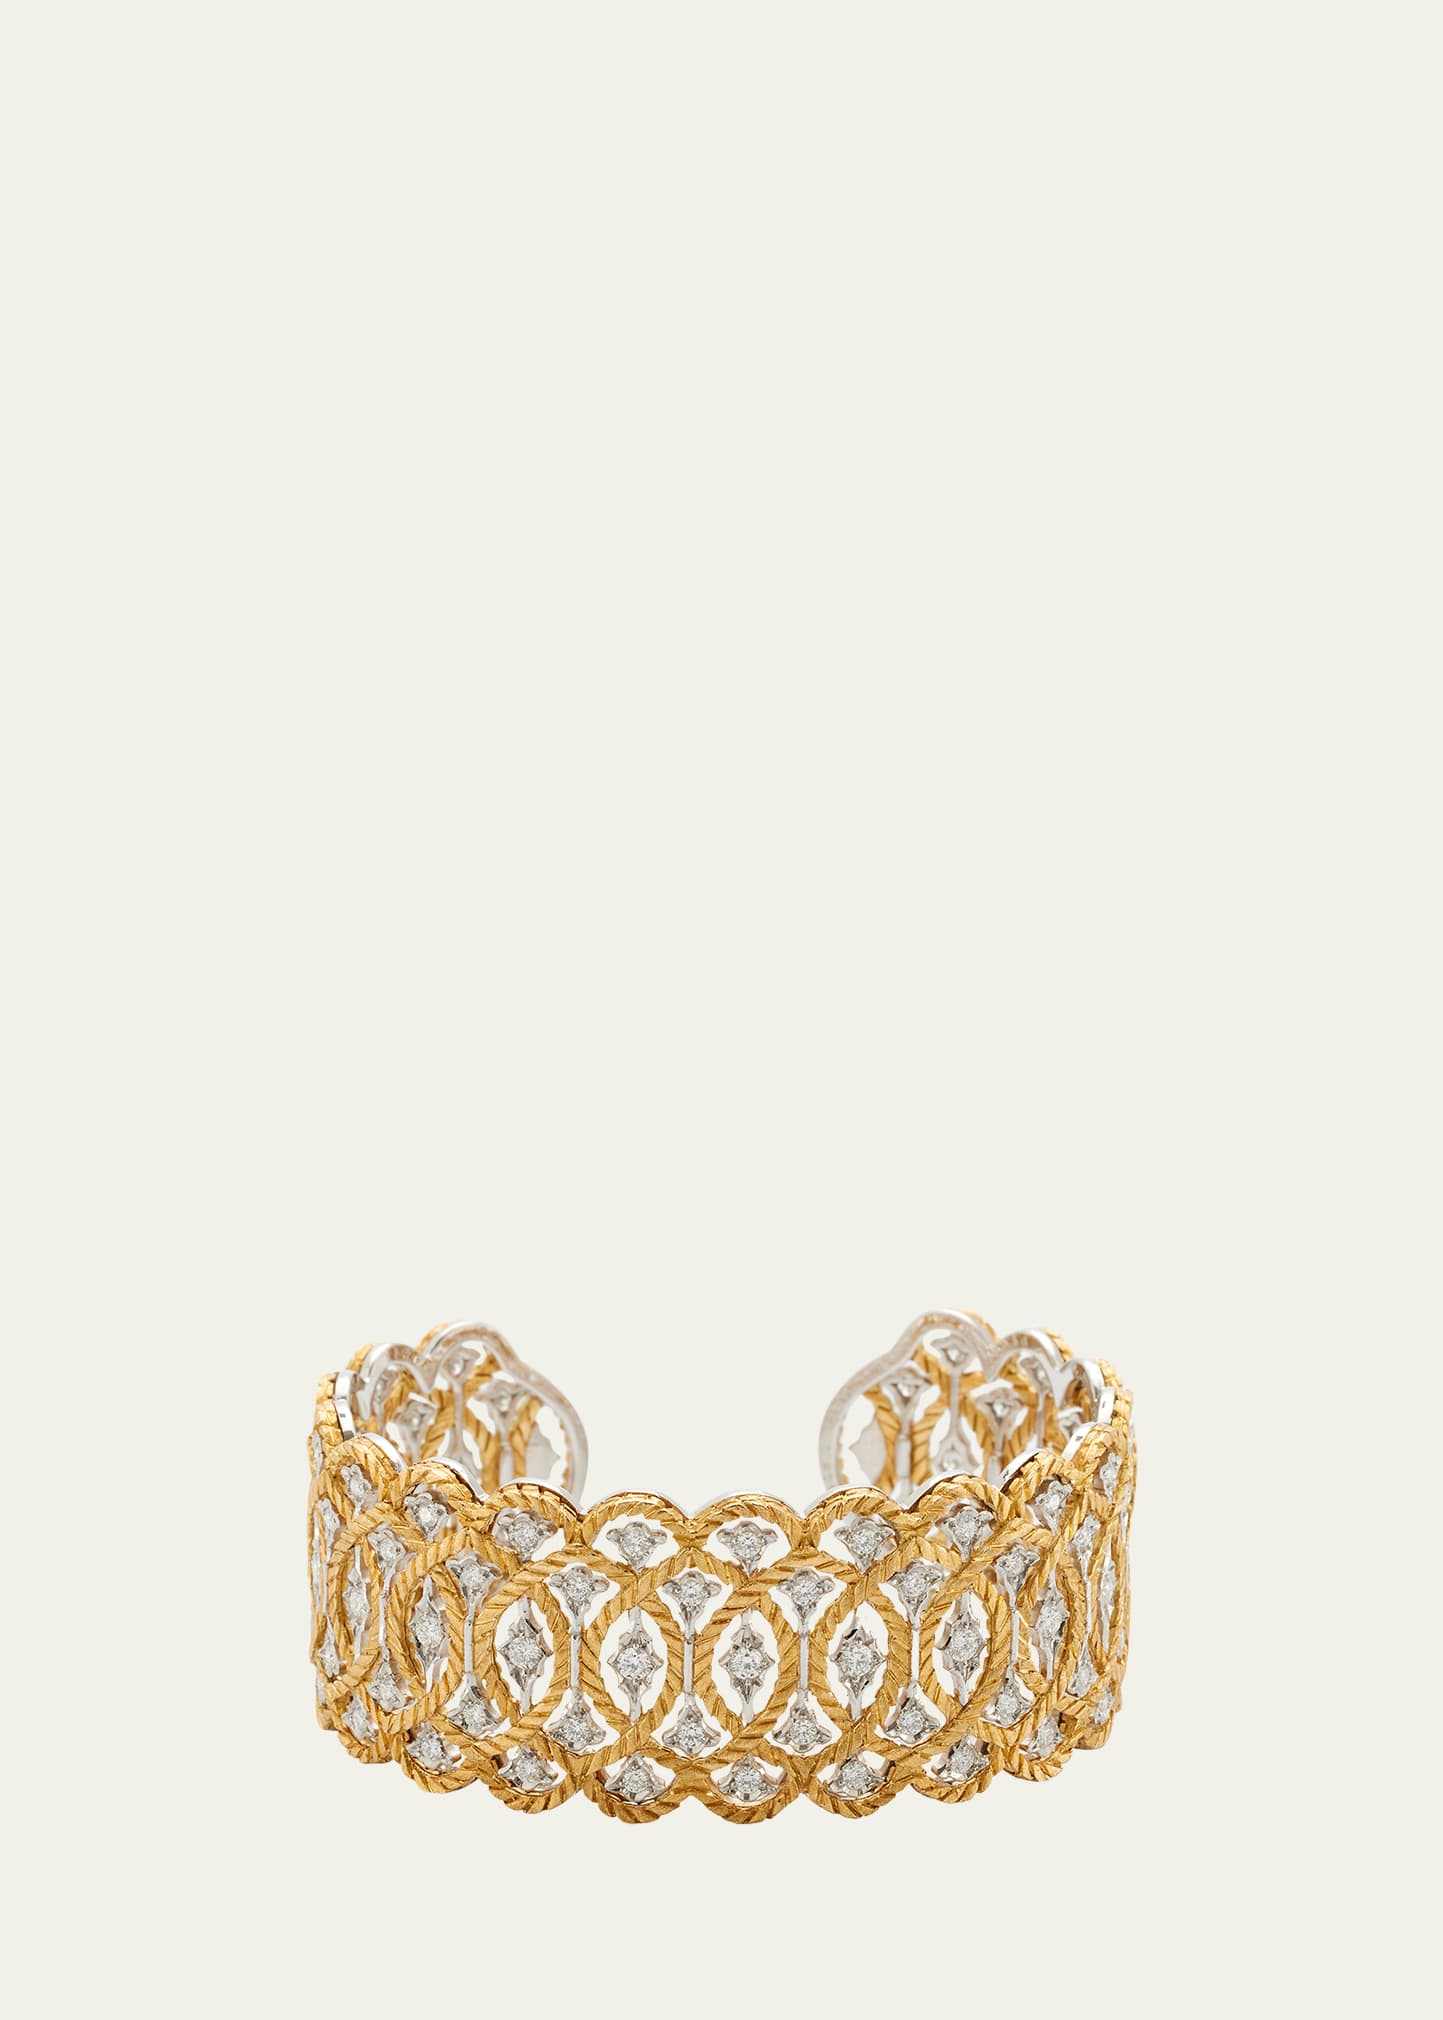 Yellow Gold, White Gold and Diamond Etoilee Bracelet